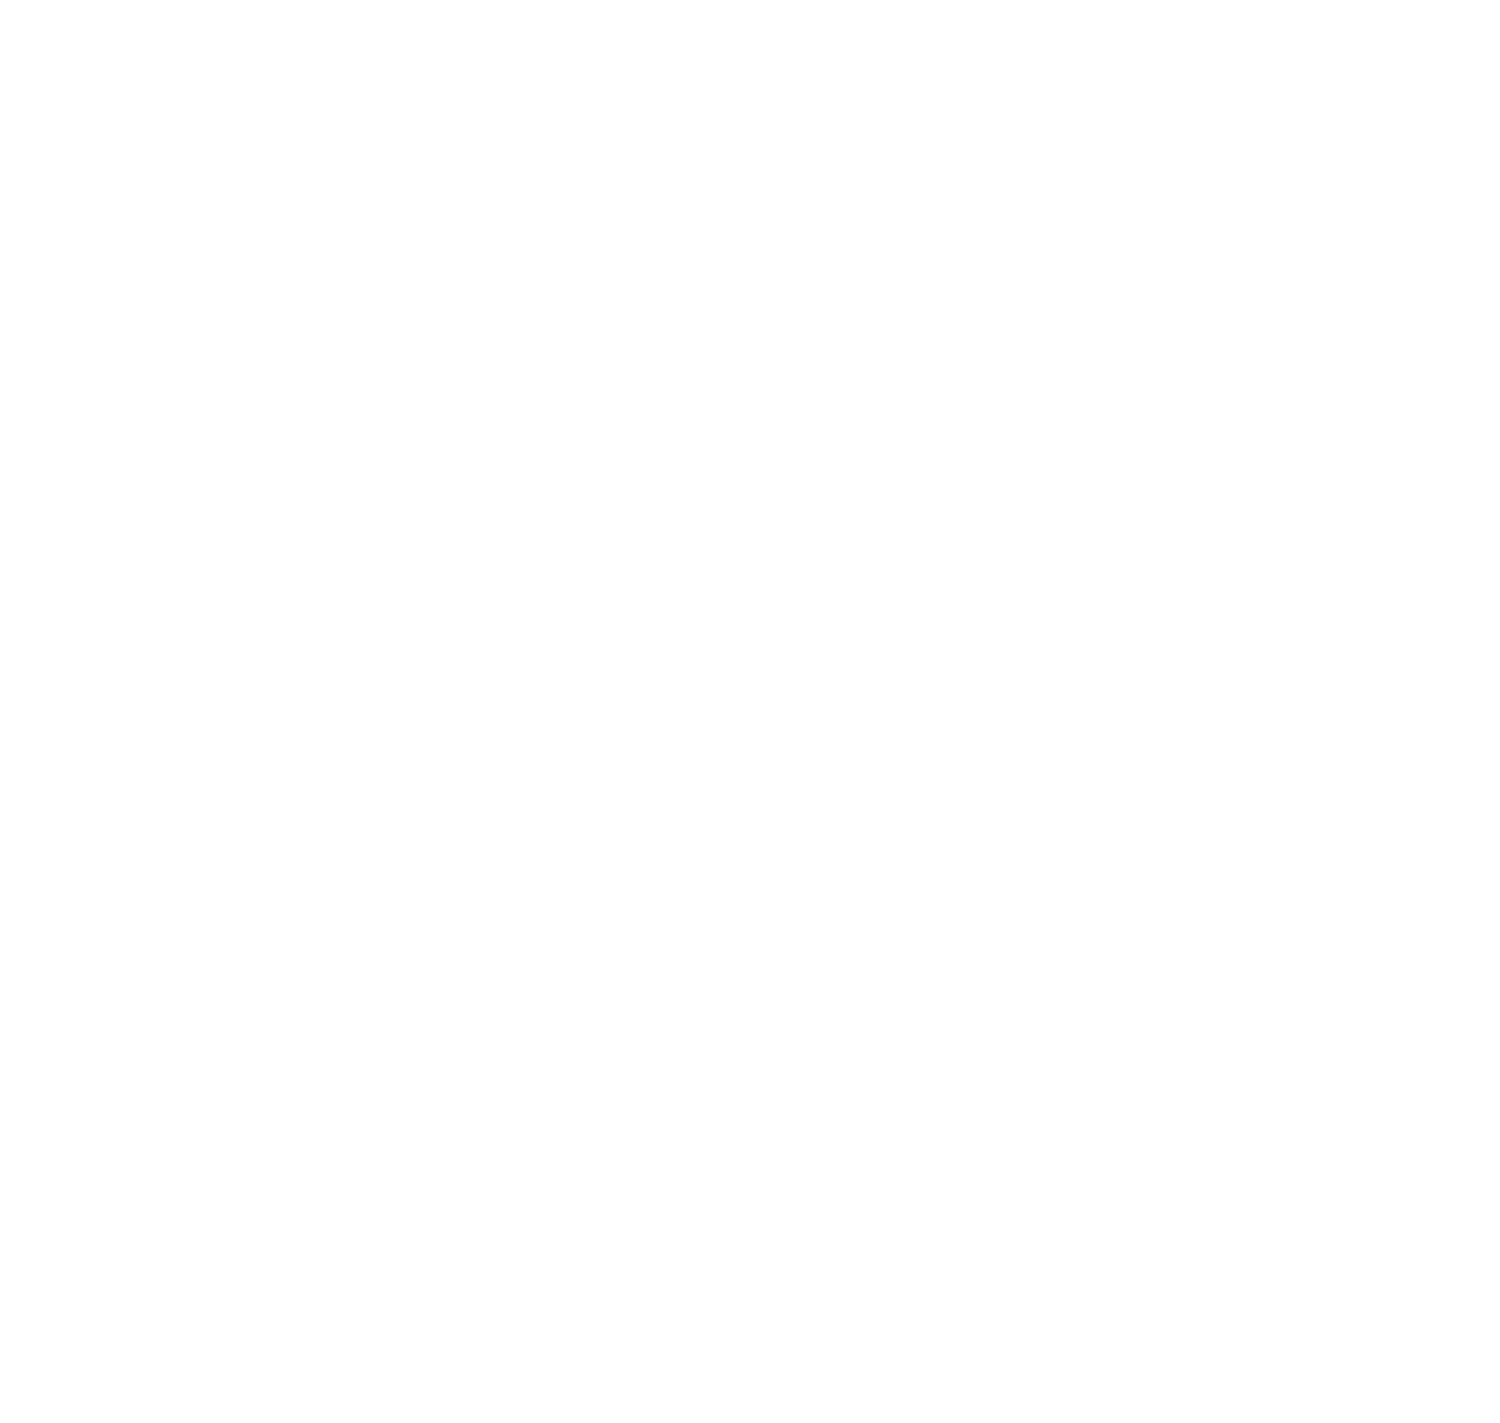 CREATING SPACE COLORADO